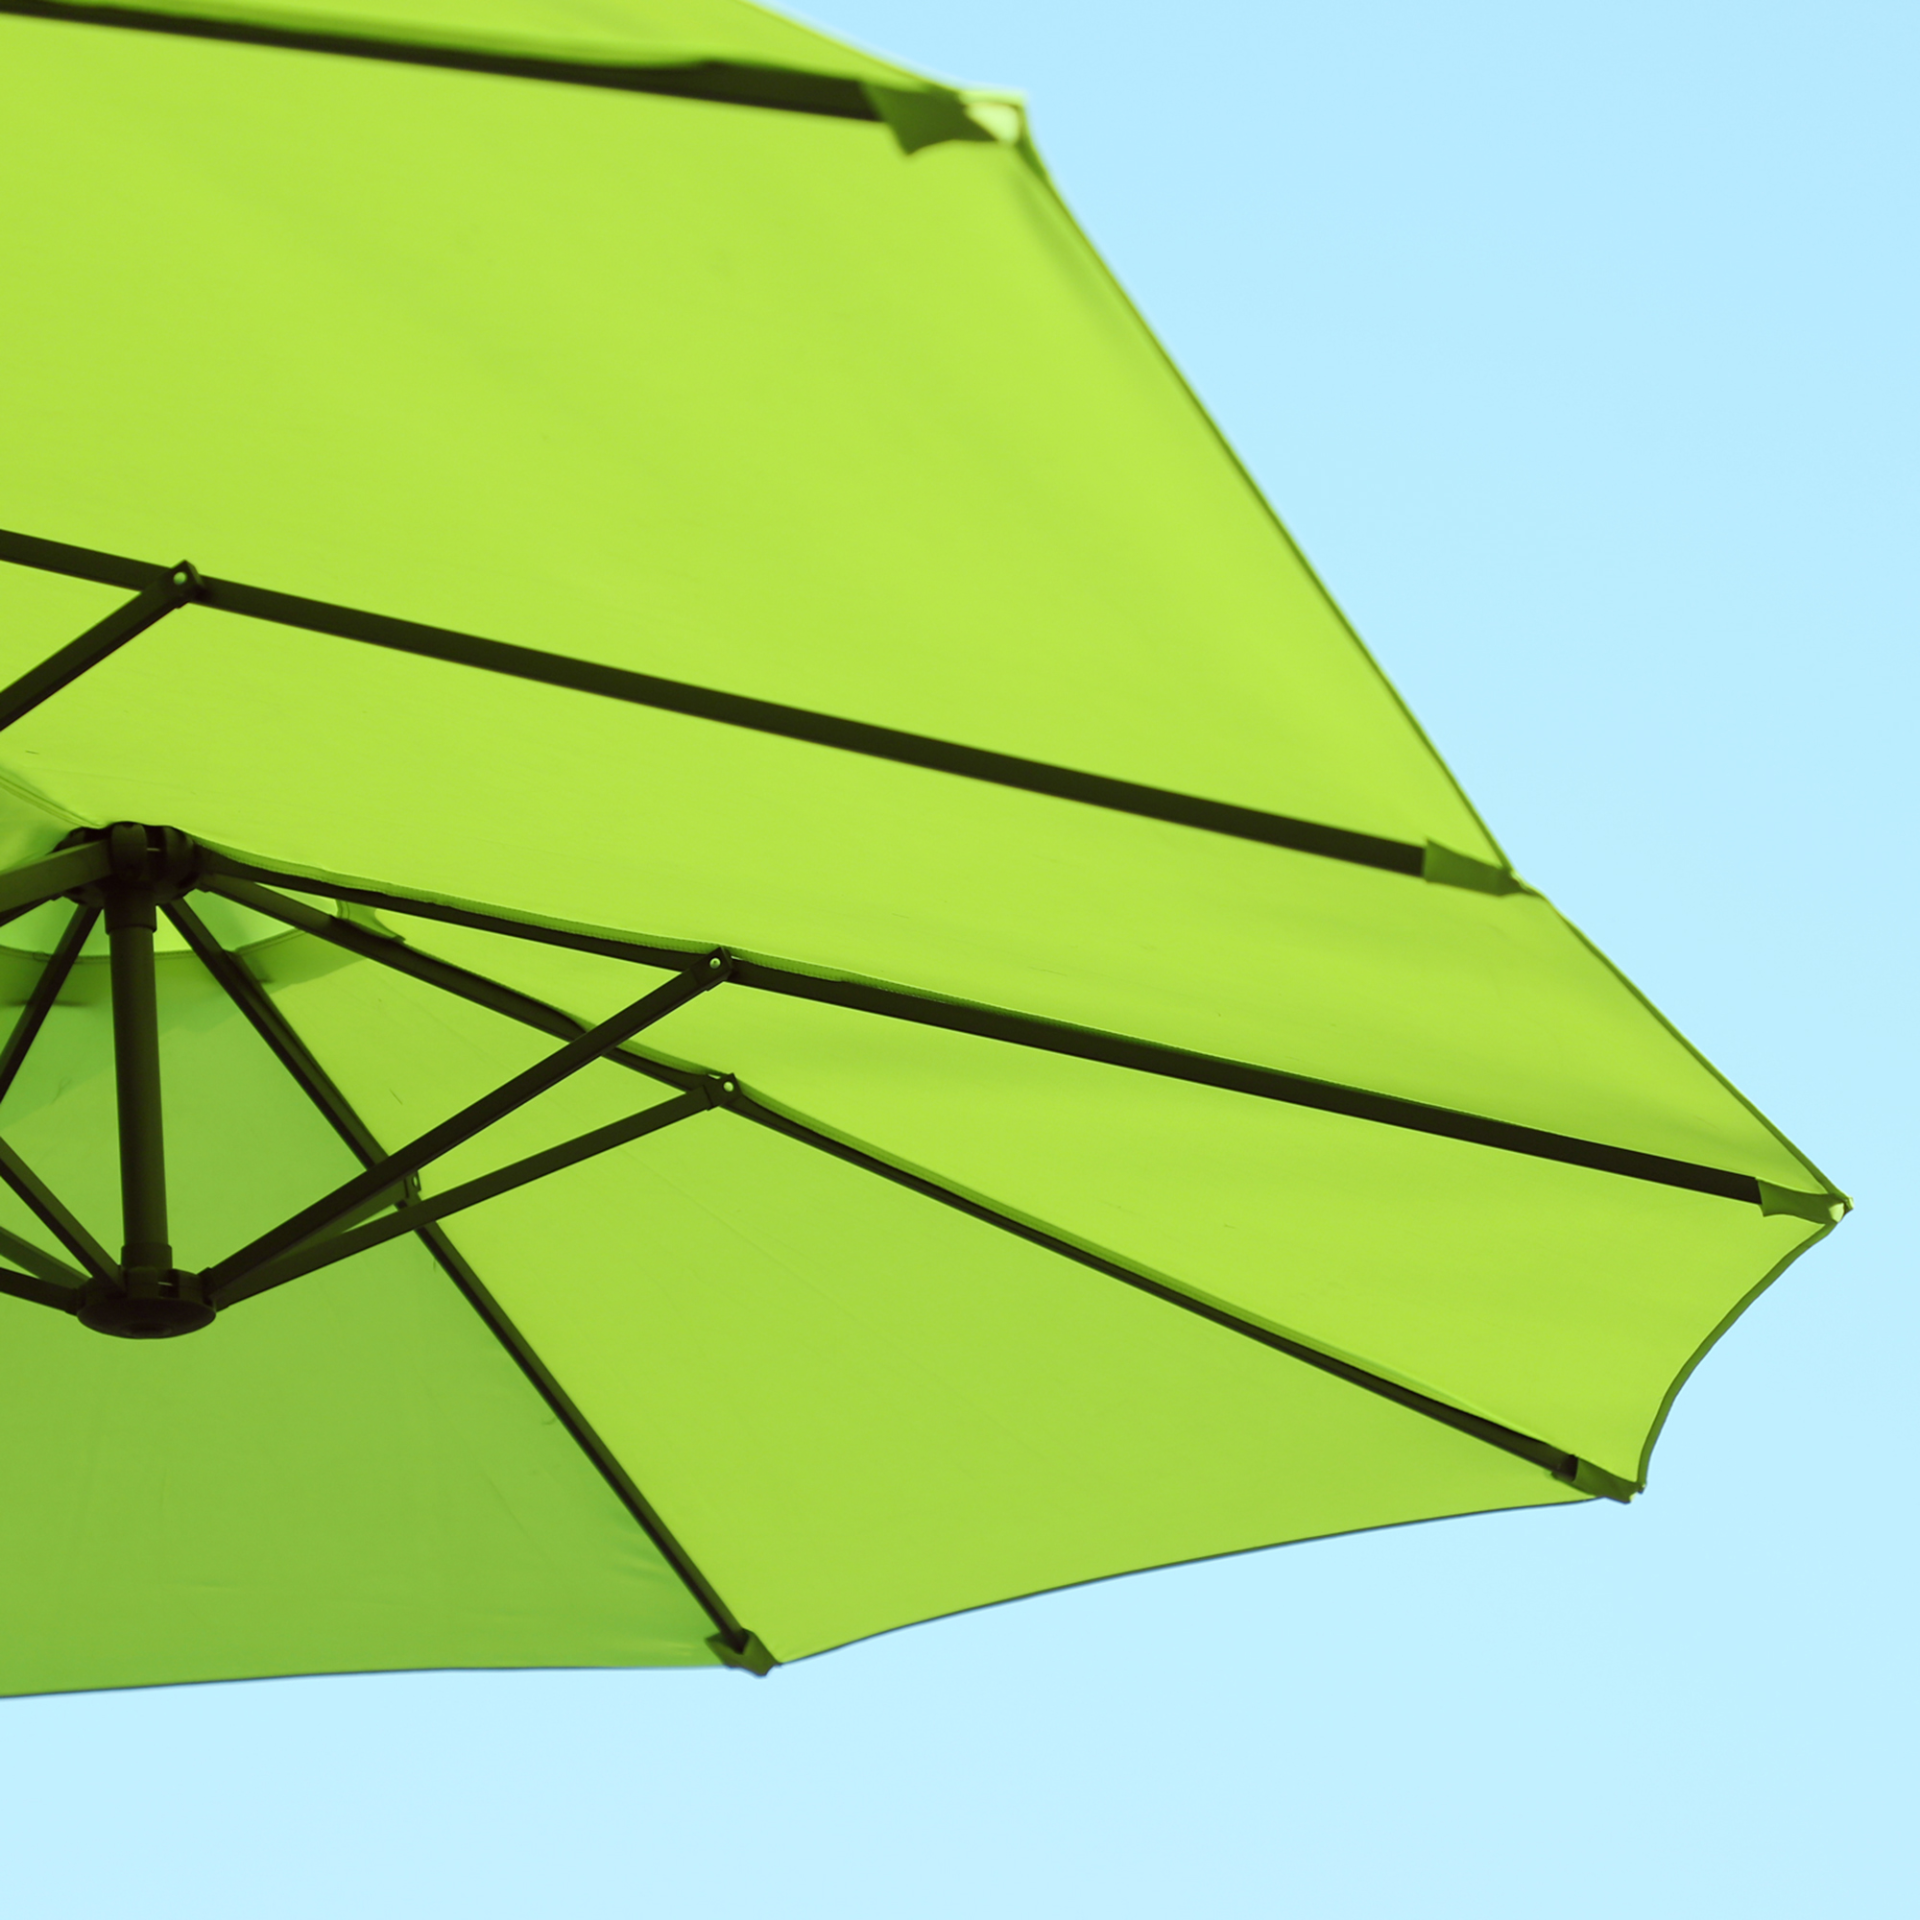 Outsunny 4.6m Garden Parasol Double-Sided Sun Umbrella Patio Market Shelter Canopy Shade Outdoor Green - NO BASE